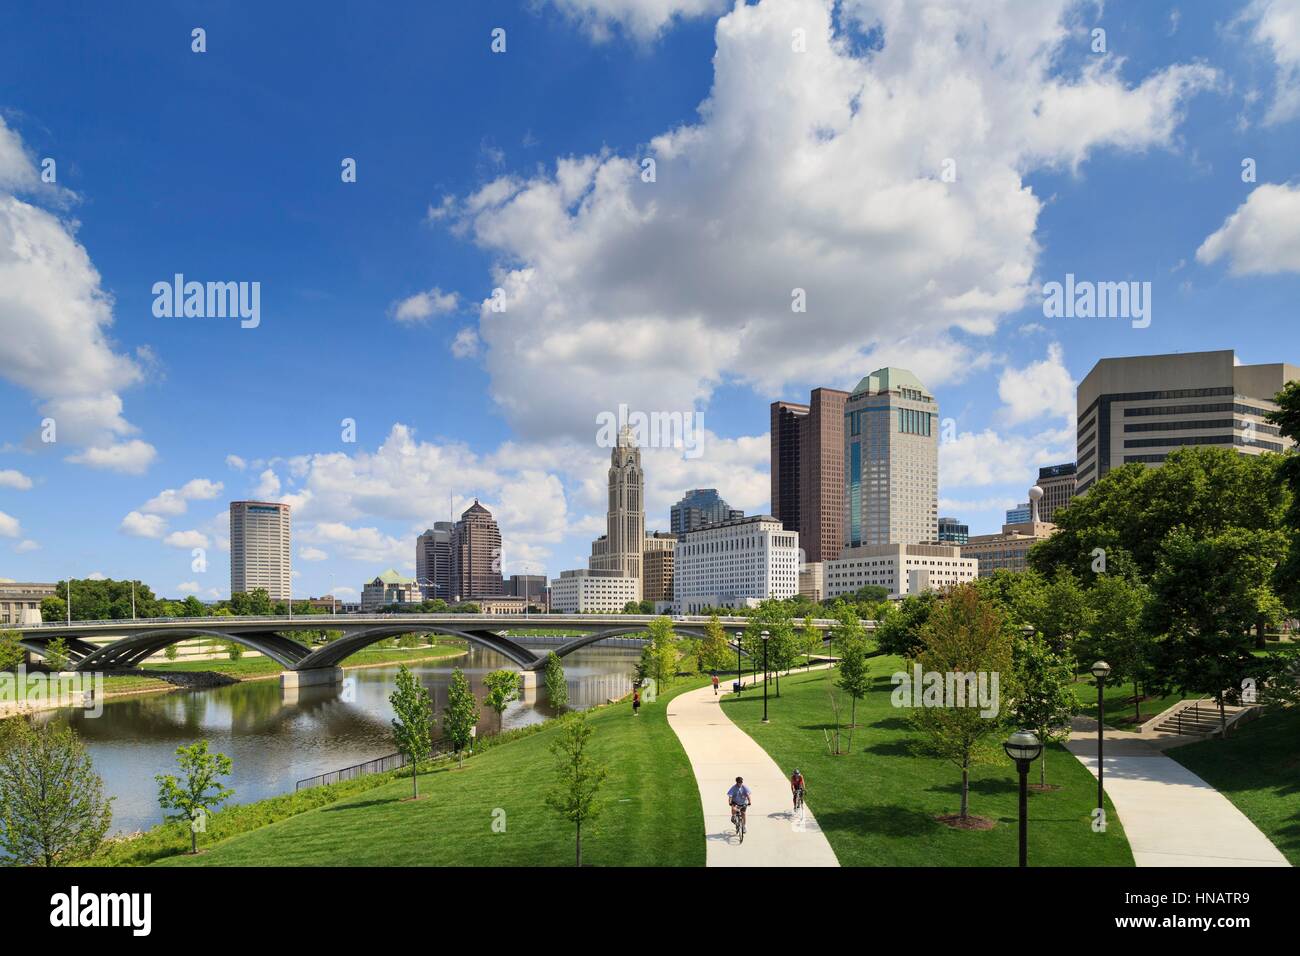 Scioto Mile Park and skyline, Downtown Columbus, Ohio, USA. Stock Photo